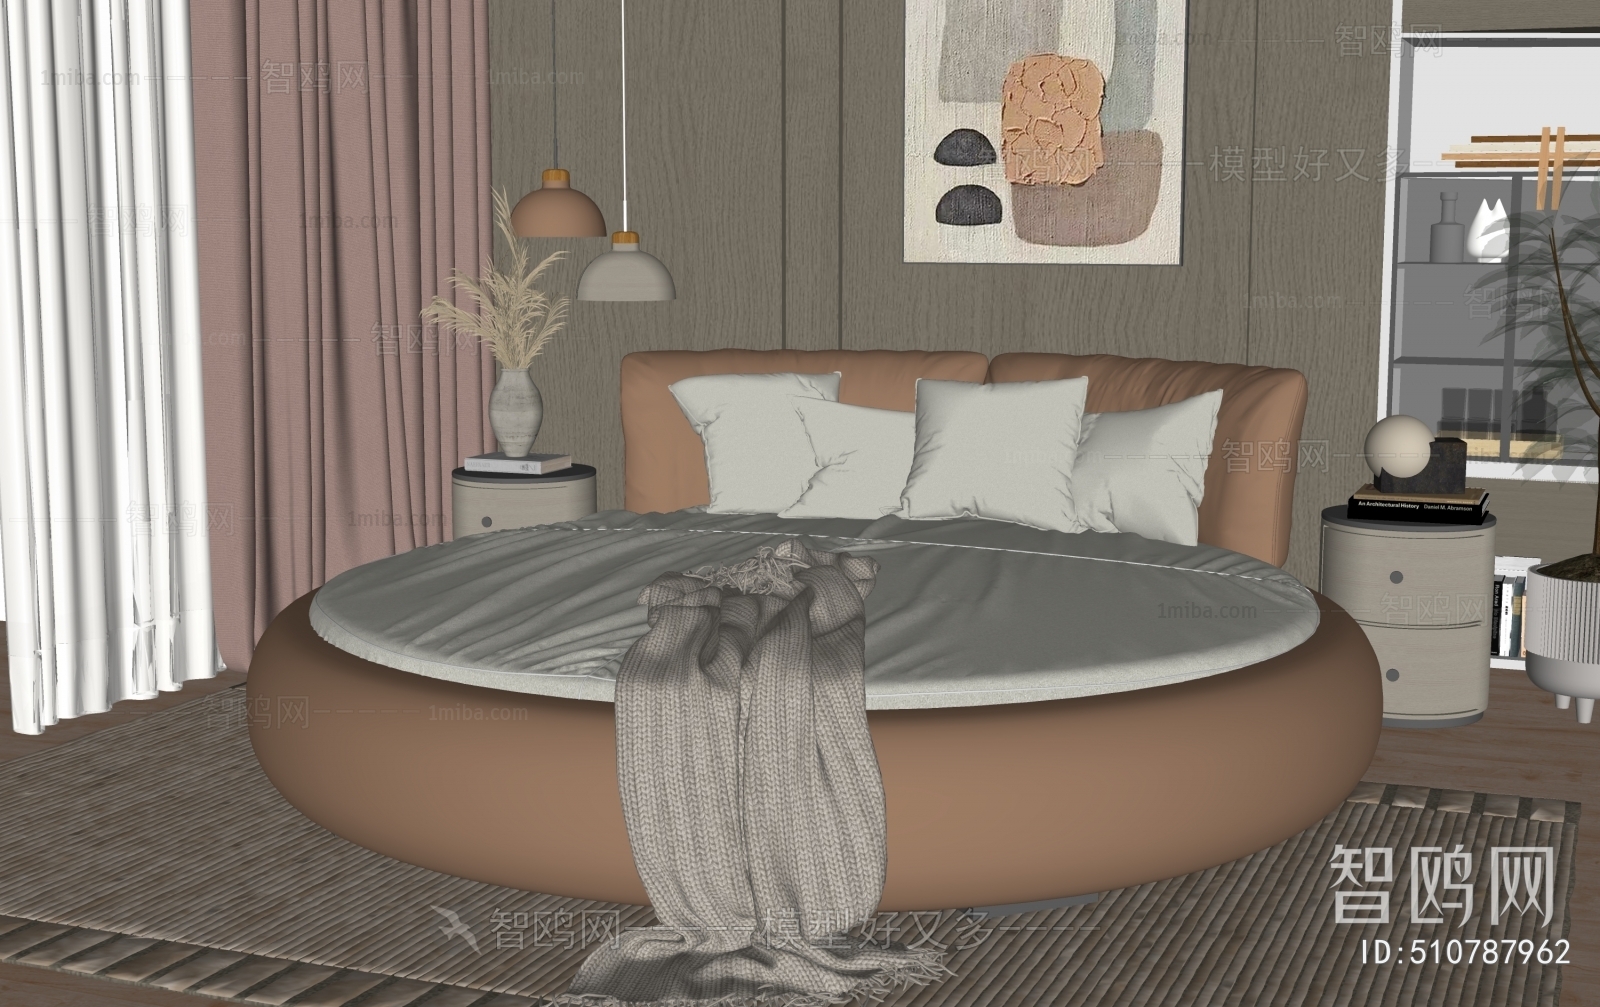 Modern Round Bed